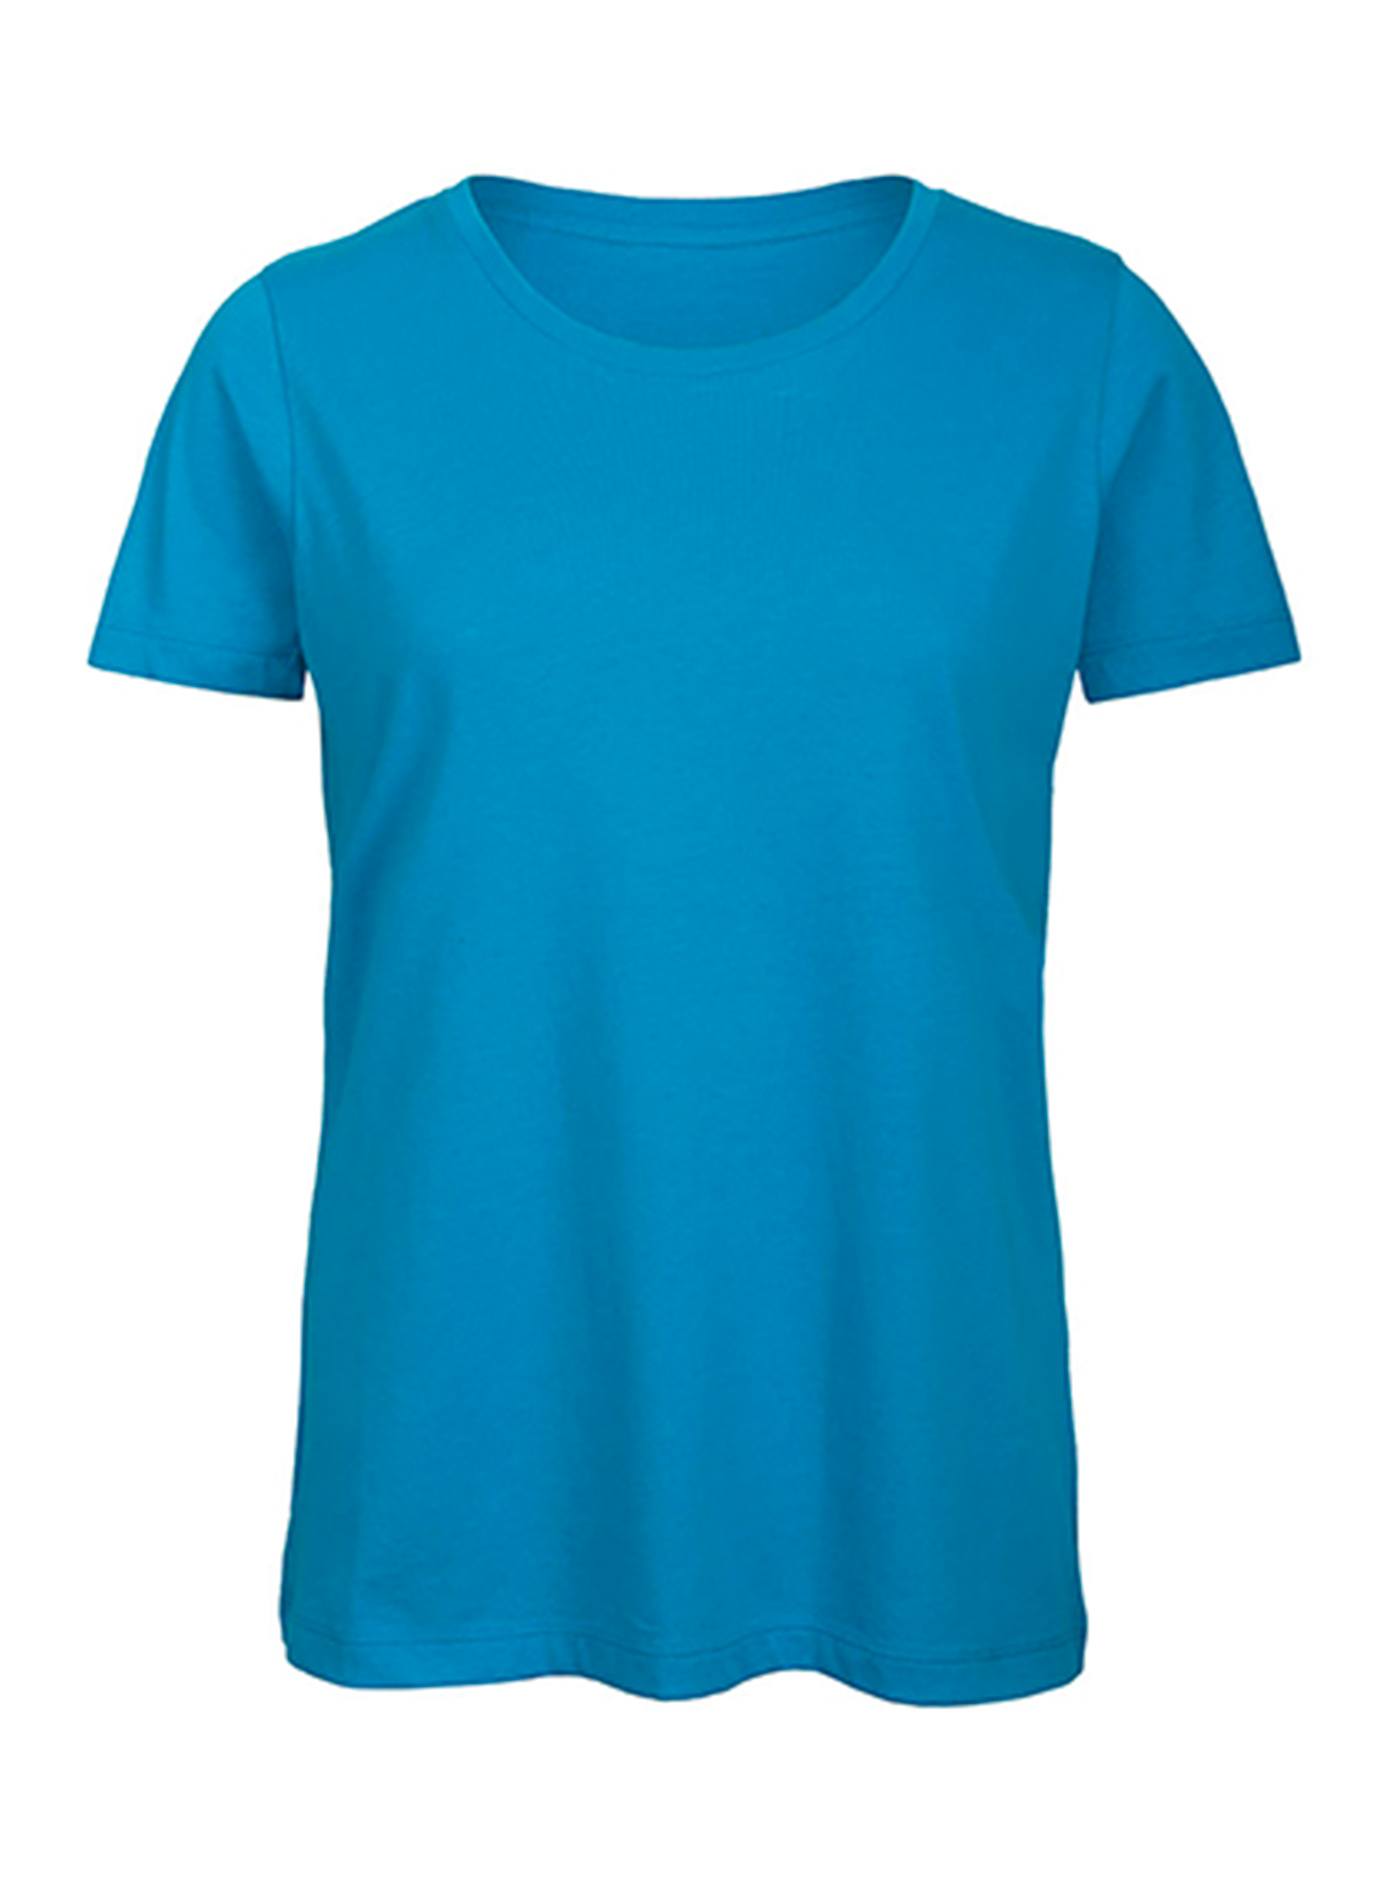 Dámské tričko B&C Collection Inspire - Blankytně modrá M